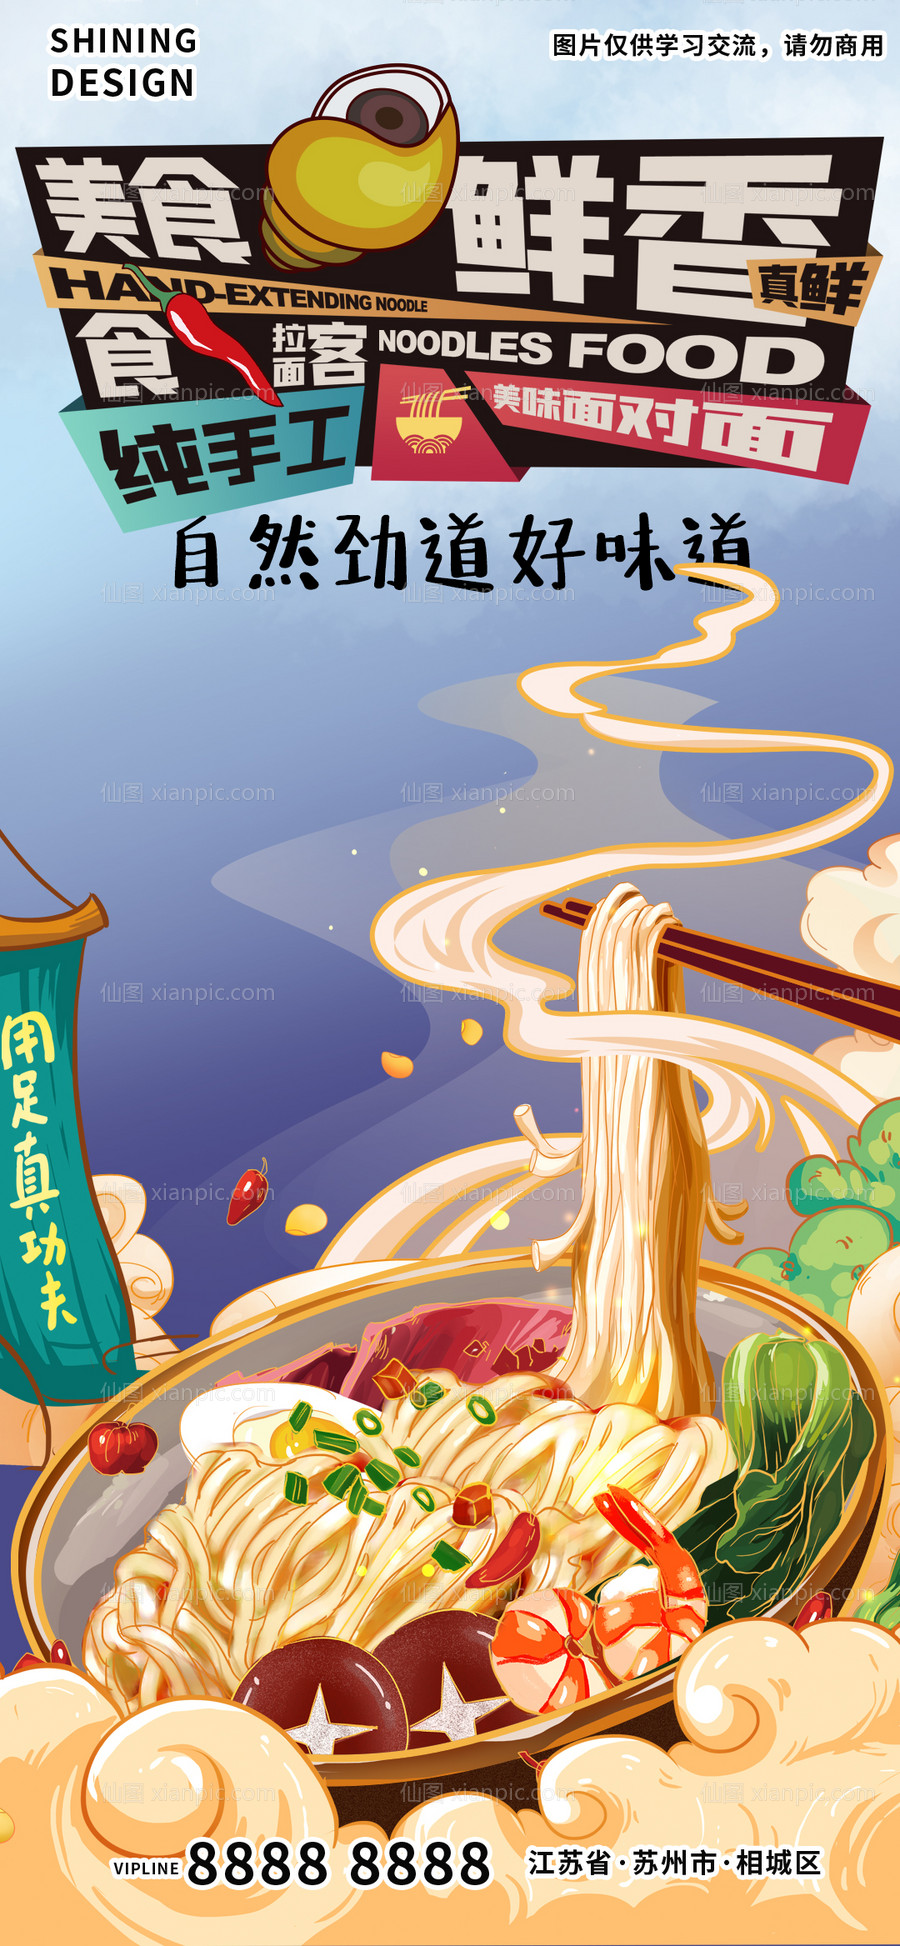 素材乐-手工面螺蛳粉面条特色美食插画手绘海报